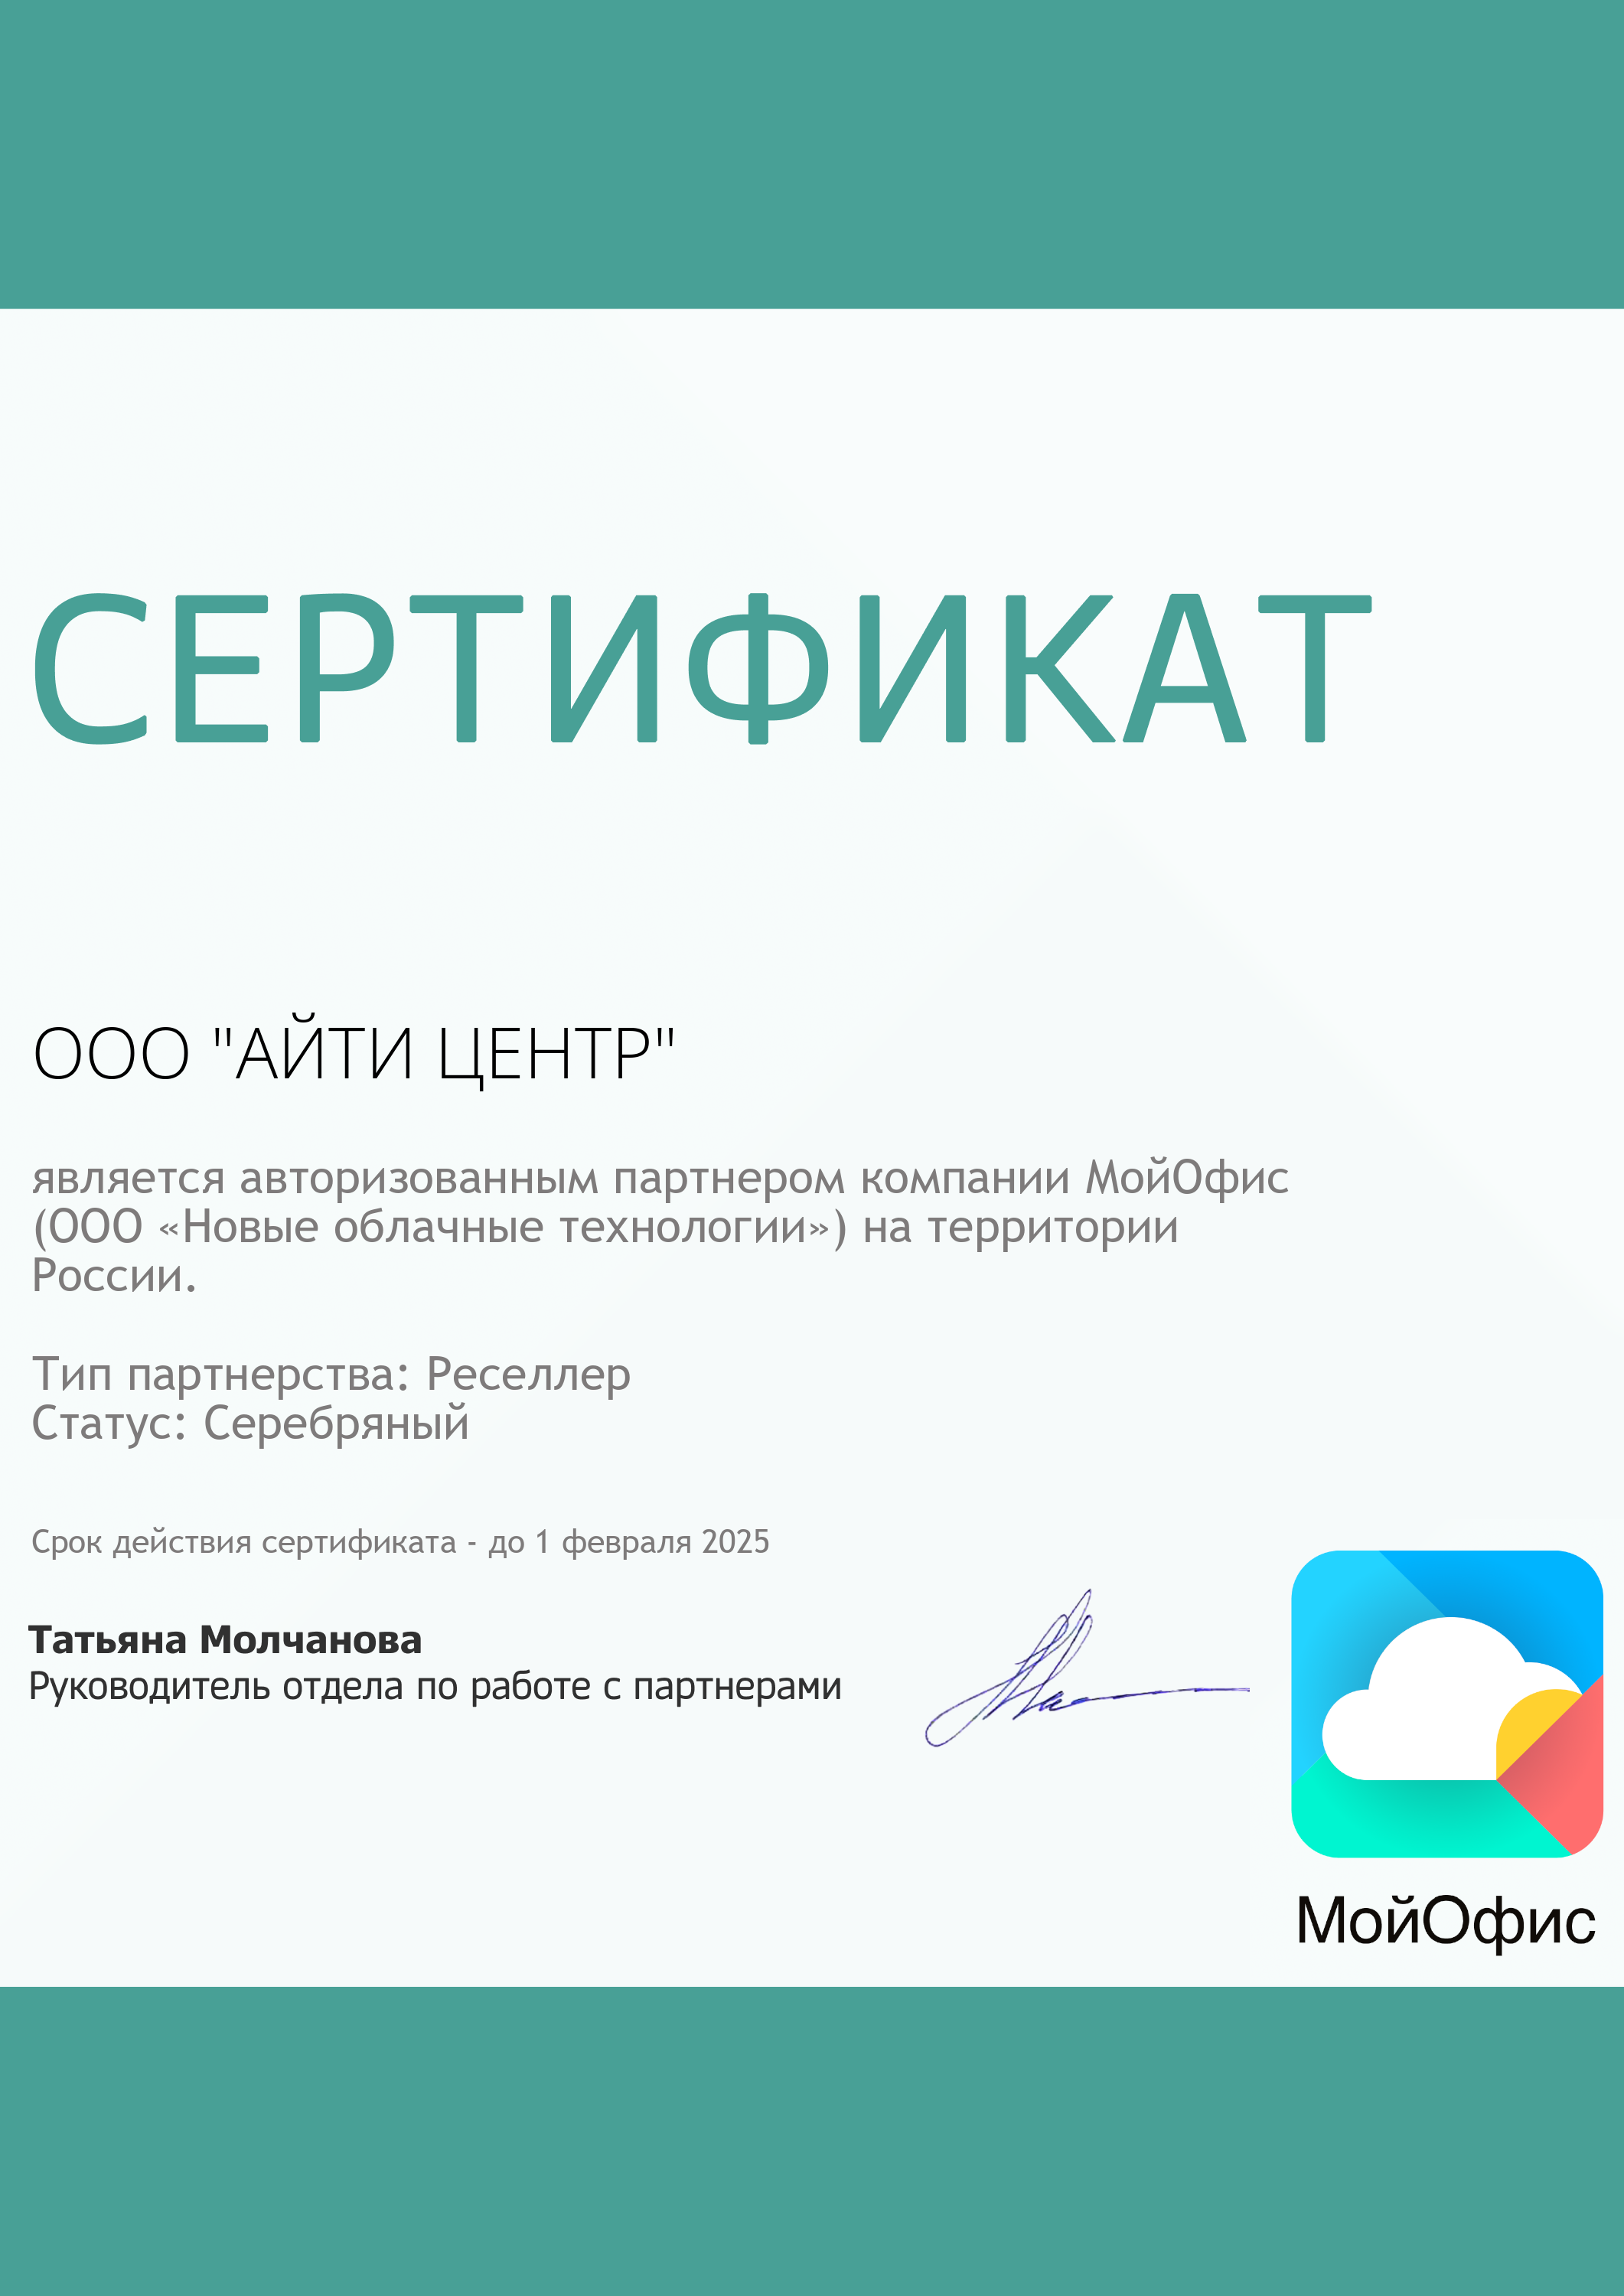 Сертификат МойОфис